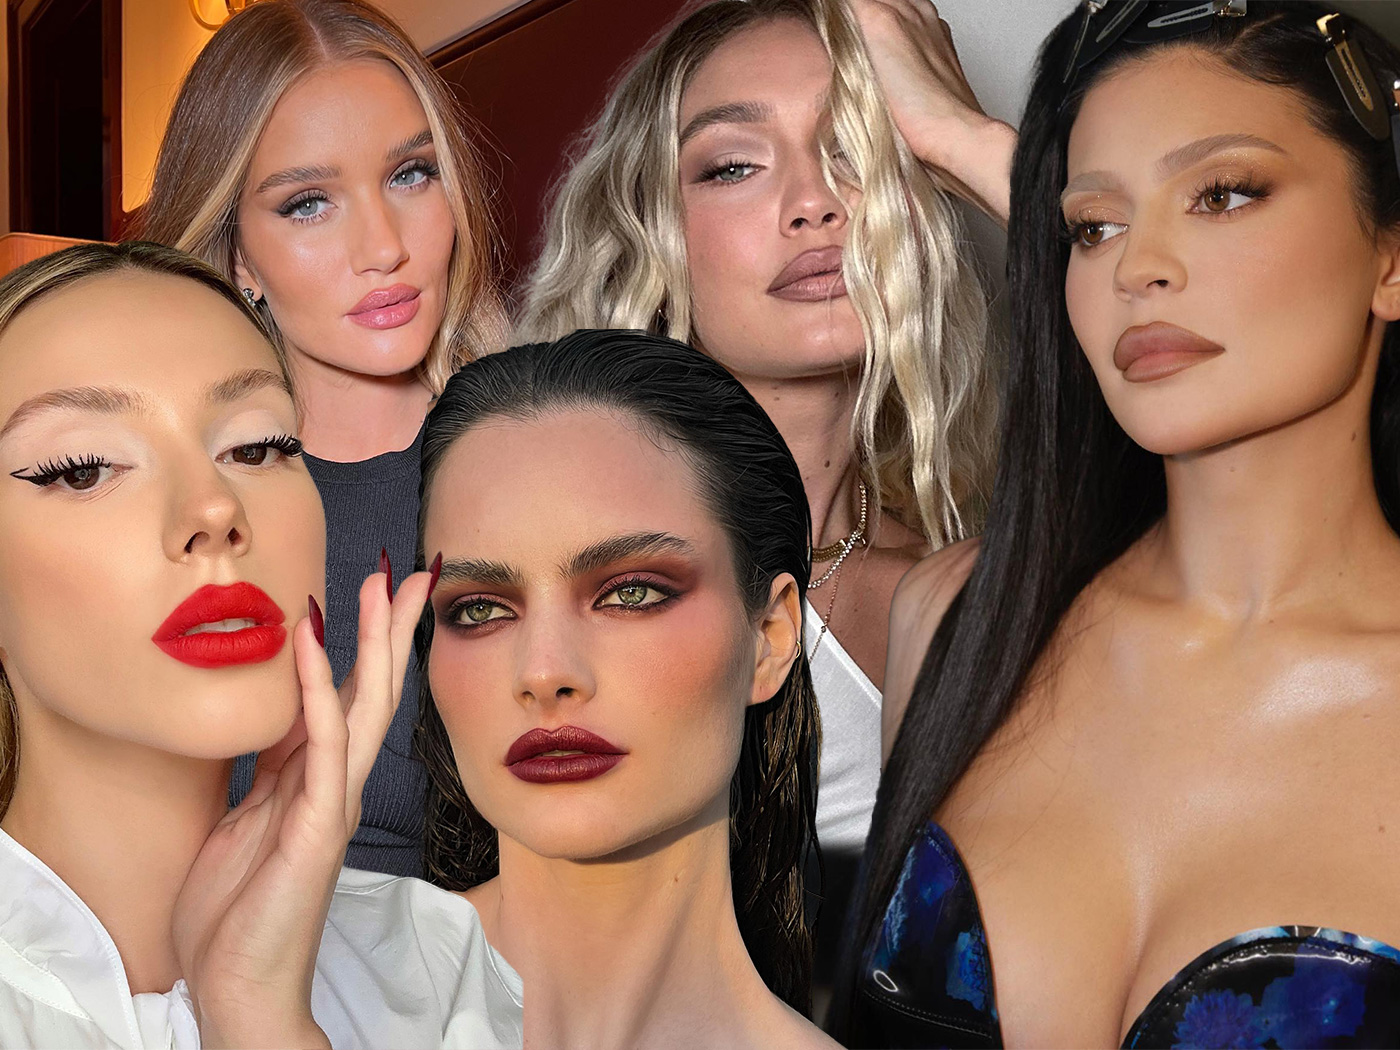 Κραγιόν: Αυτές είναι οι 5 αποχρώσεις του φθινοπώρου που προτείνουν οι celebrity make up artists